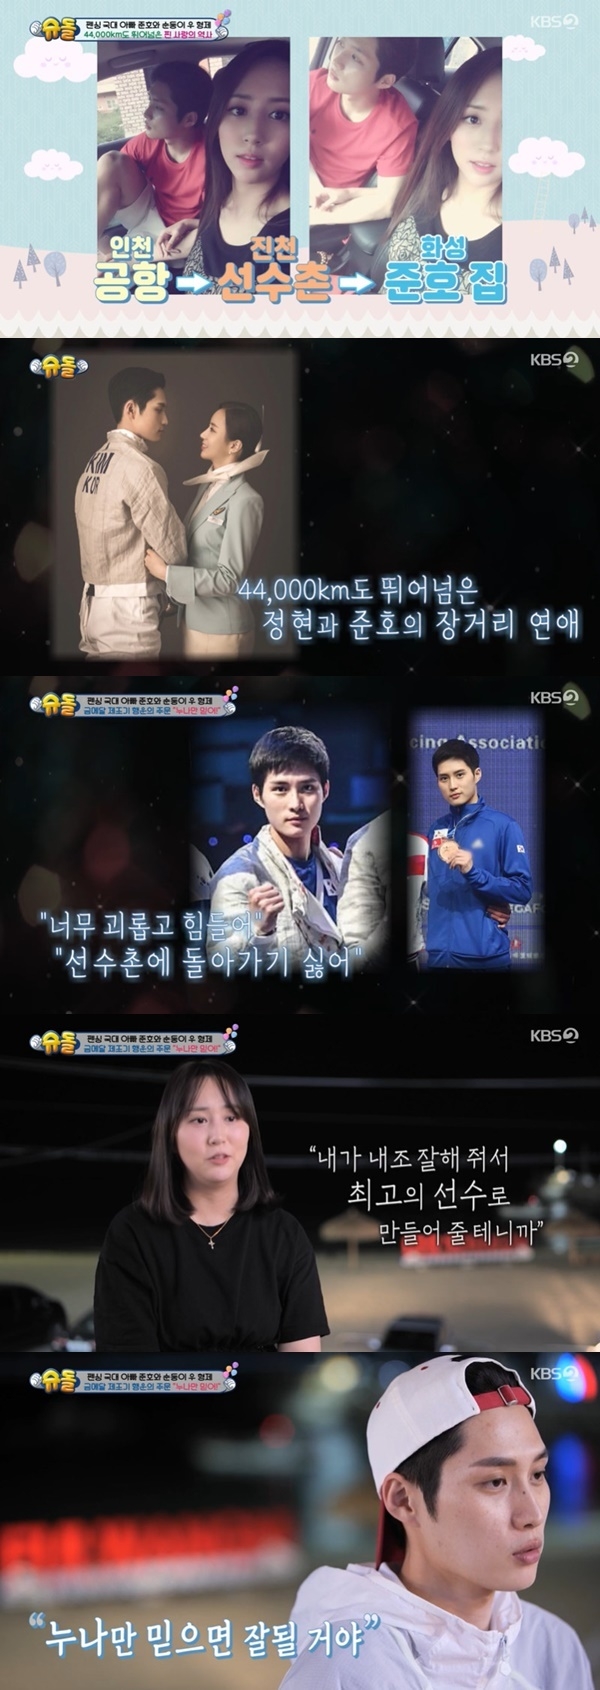 펜싱 국가대표 선수 김준호가 5세 연상 승무원 출신 아내와의 일화를 공개했다. KBS 2TV ‘슈퍼맨이 돌아왔다’